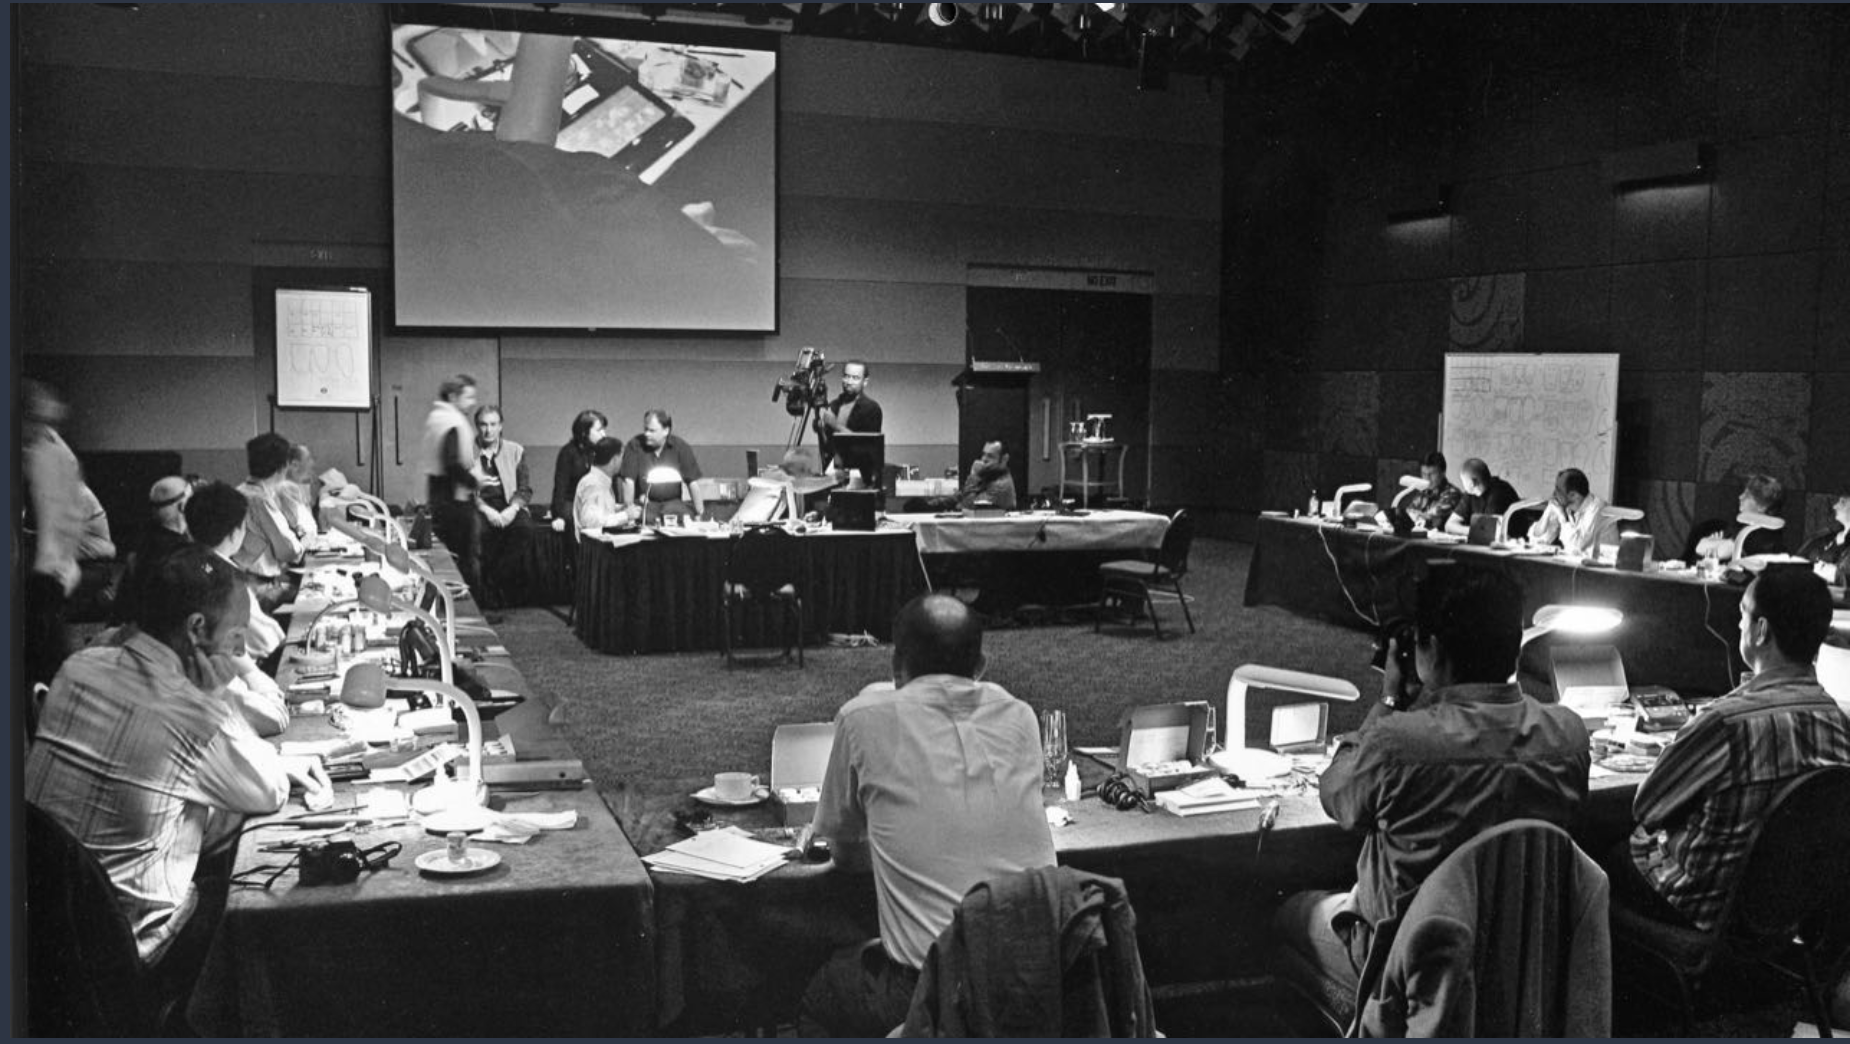 Oral Design Symposium  Melbourne, Australia  April, 7 - 9, 2006